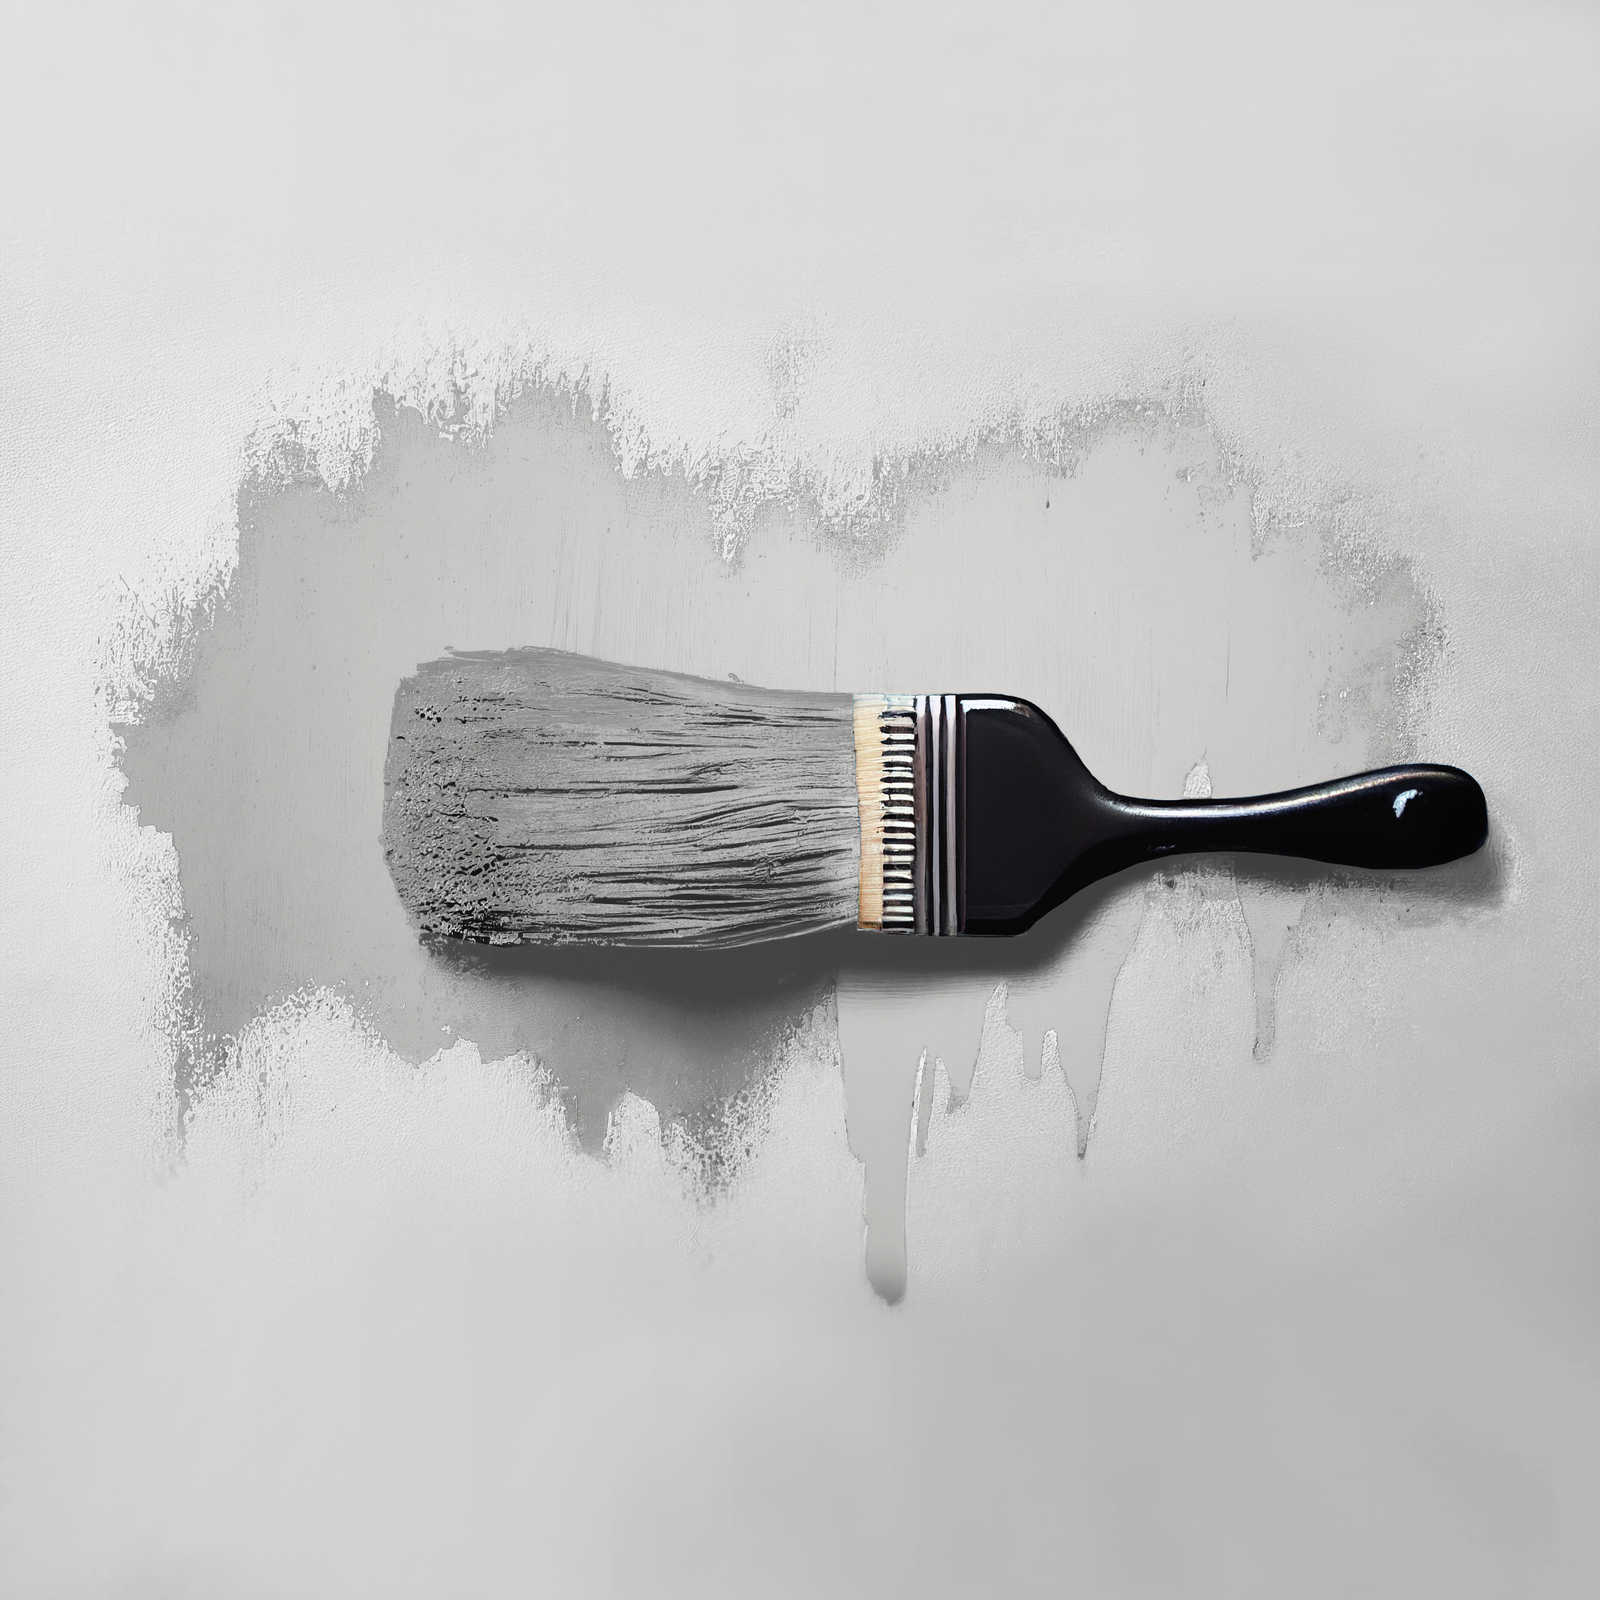             Pittura murale TCK1009 »Sprat Fish« in tinta unita grigio argento – 2,5 litri
        